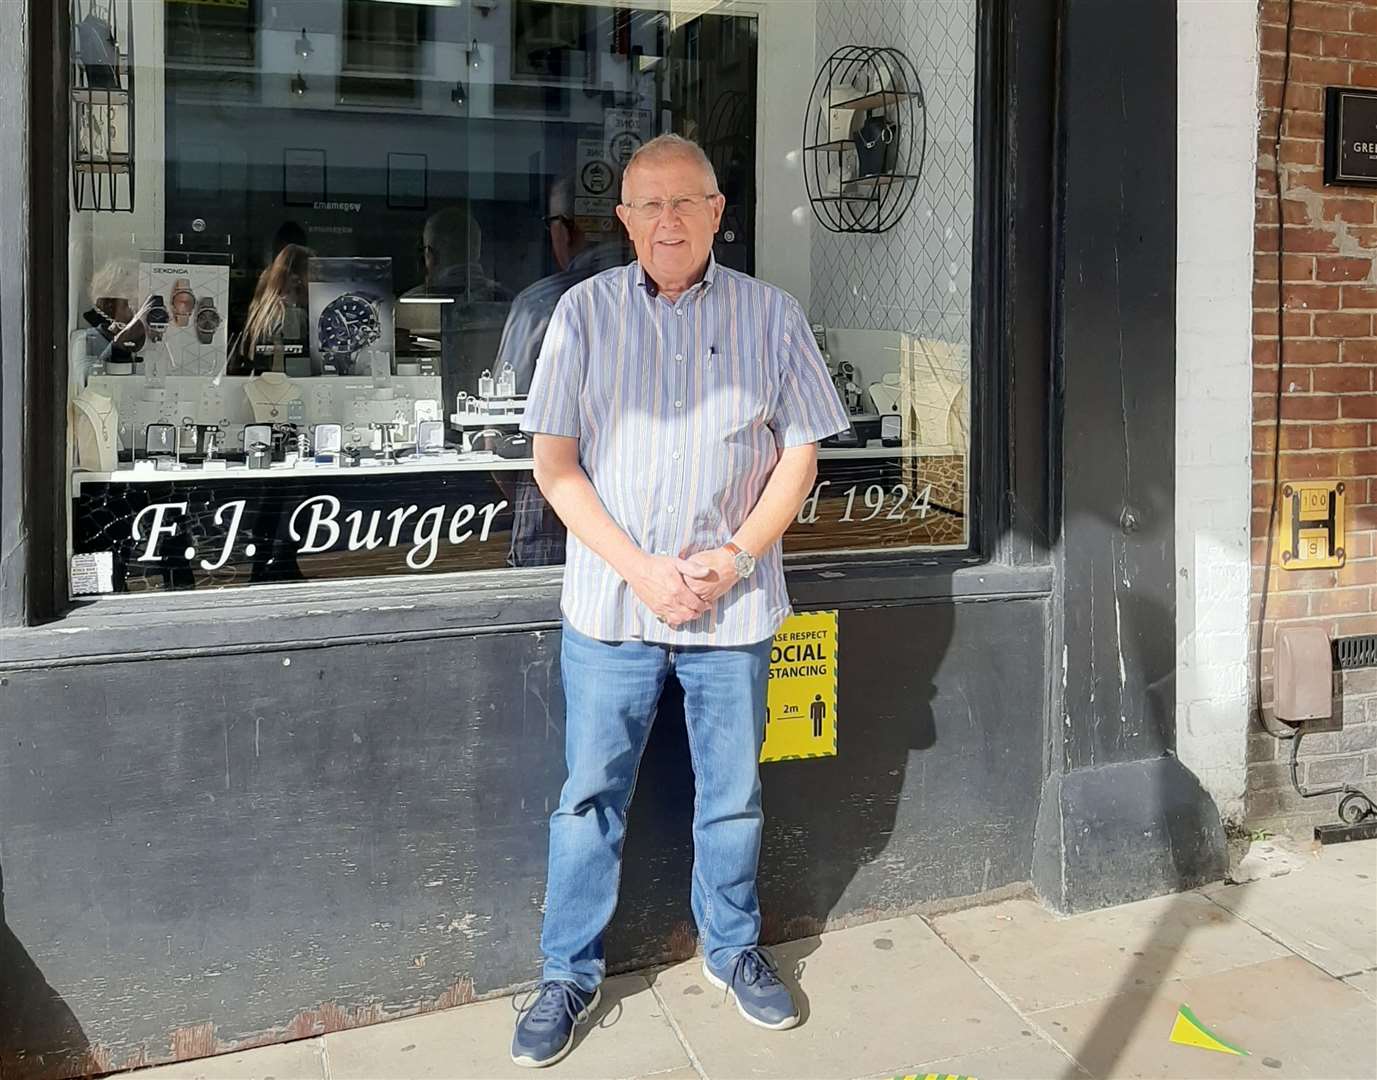 Alan Cumming owns F.J Burger Jewellers